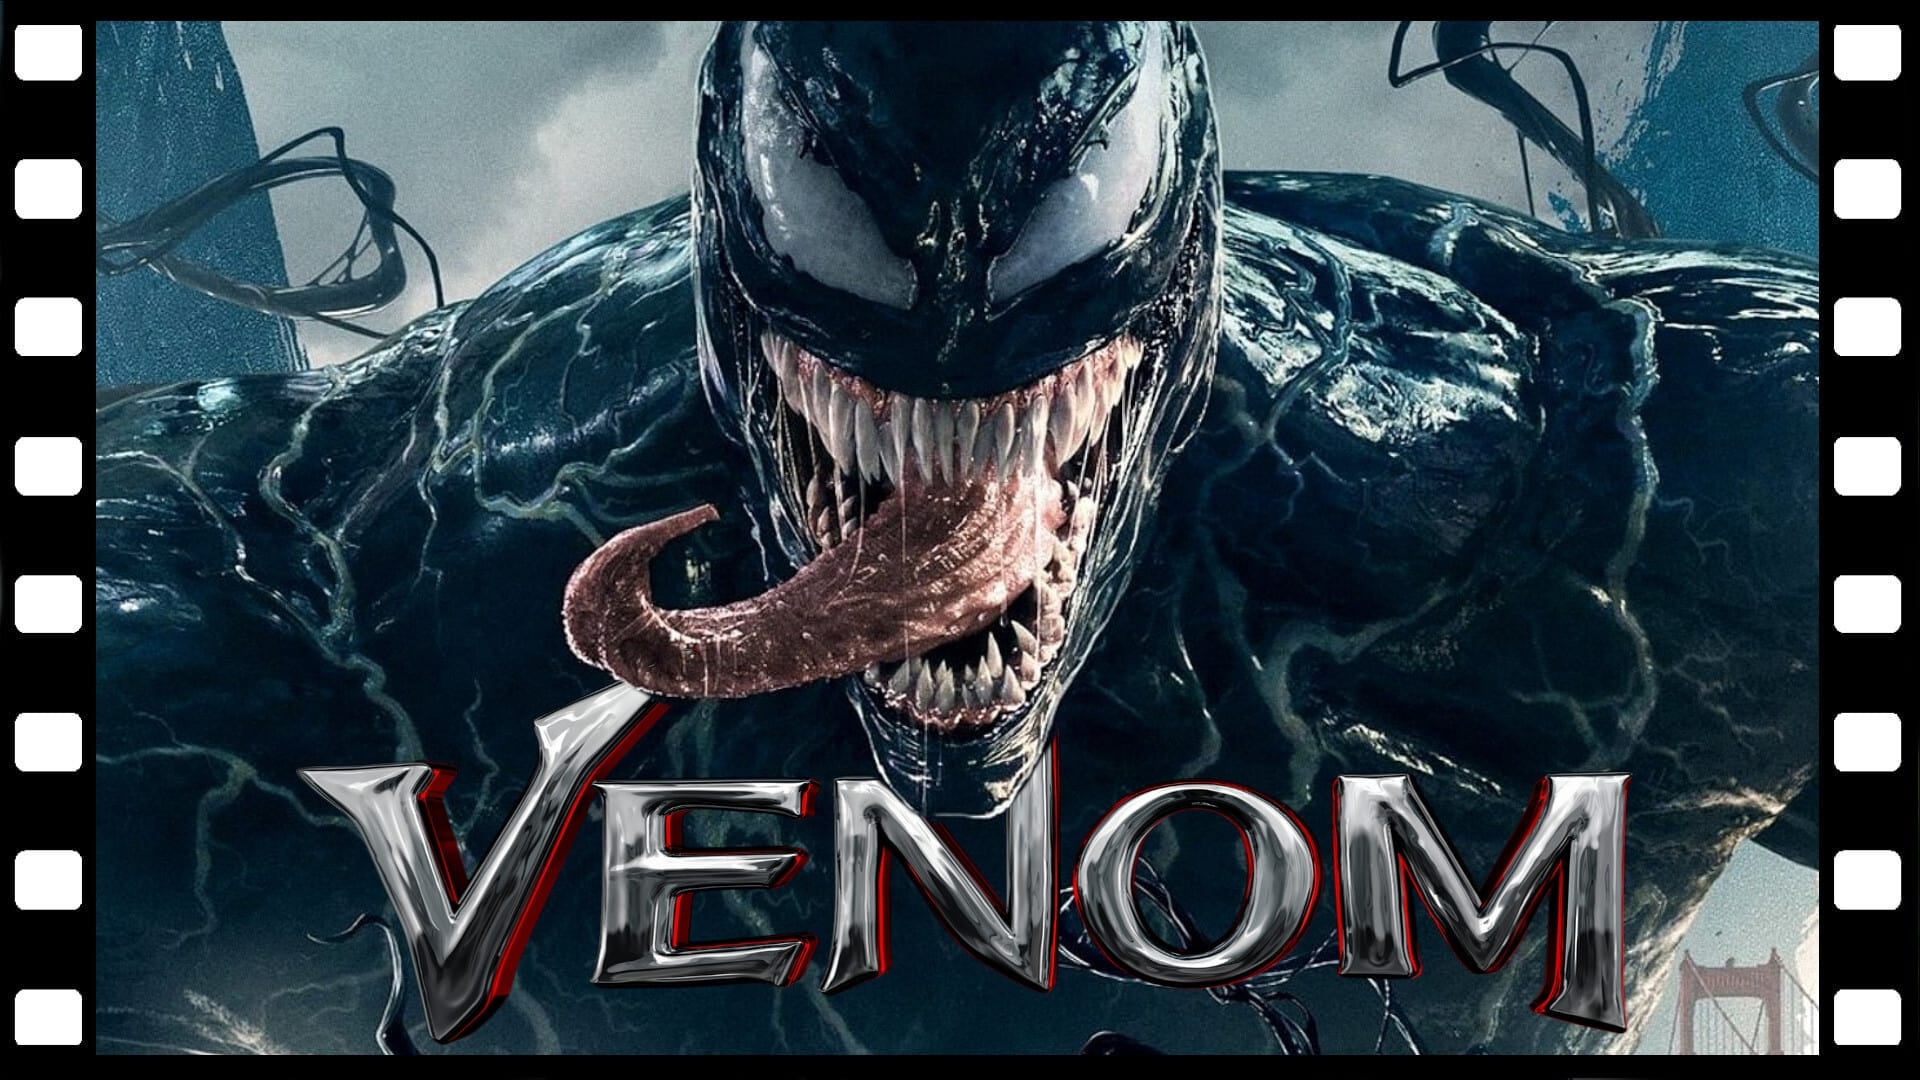 Venom: Zehirli Öfke (2018)